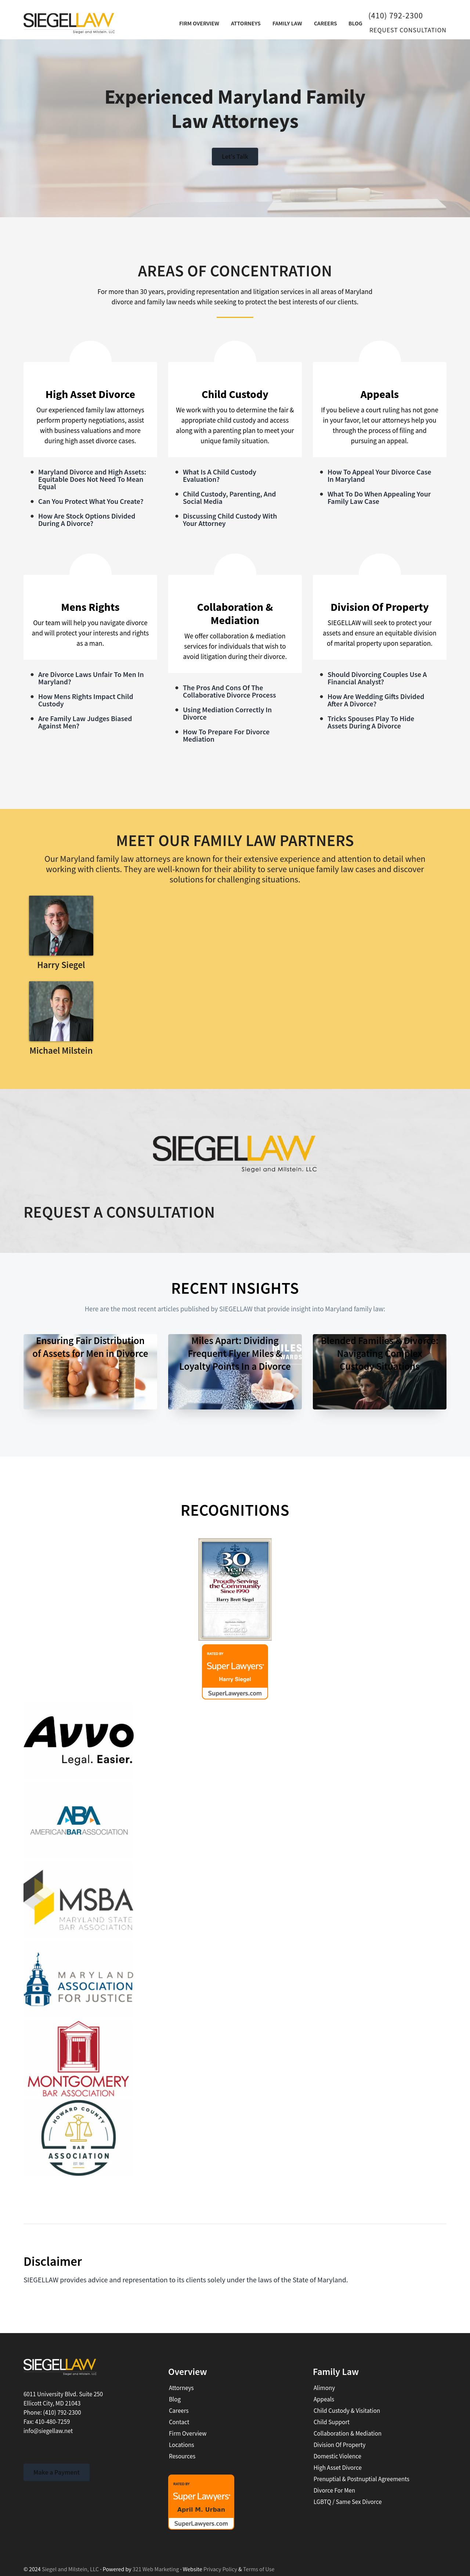 SIEGELLAW - Ellicott City MD Lawyers